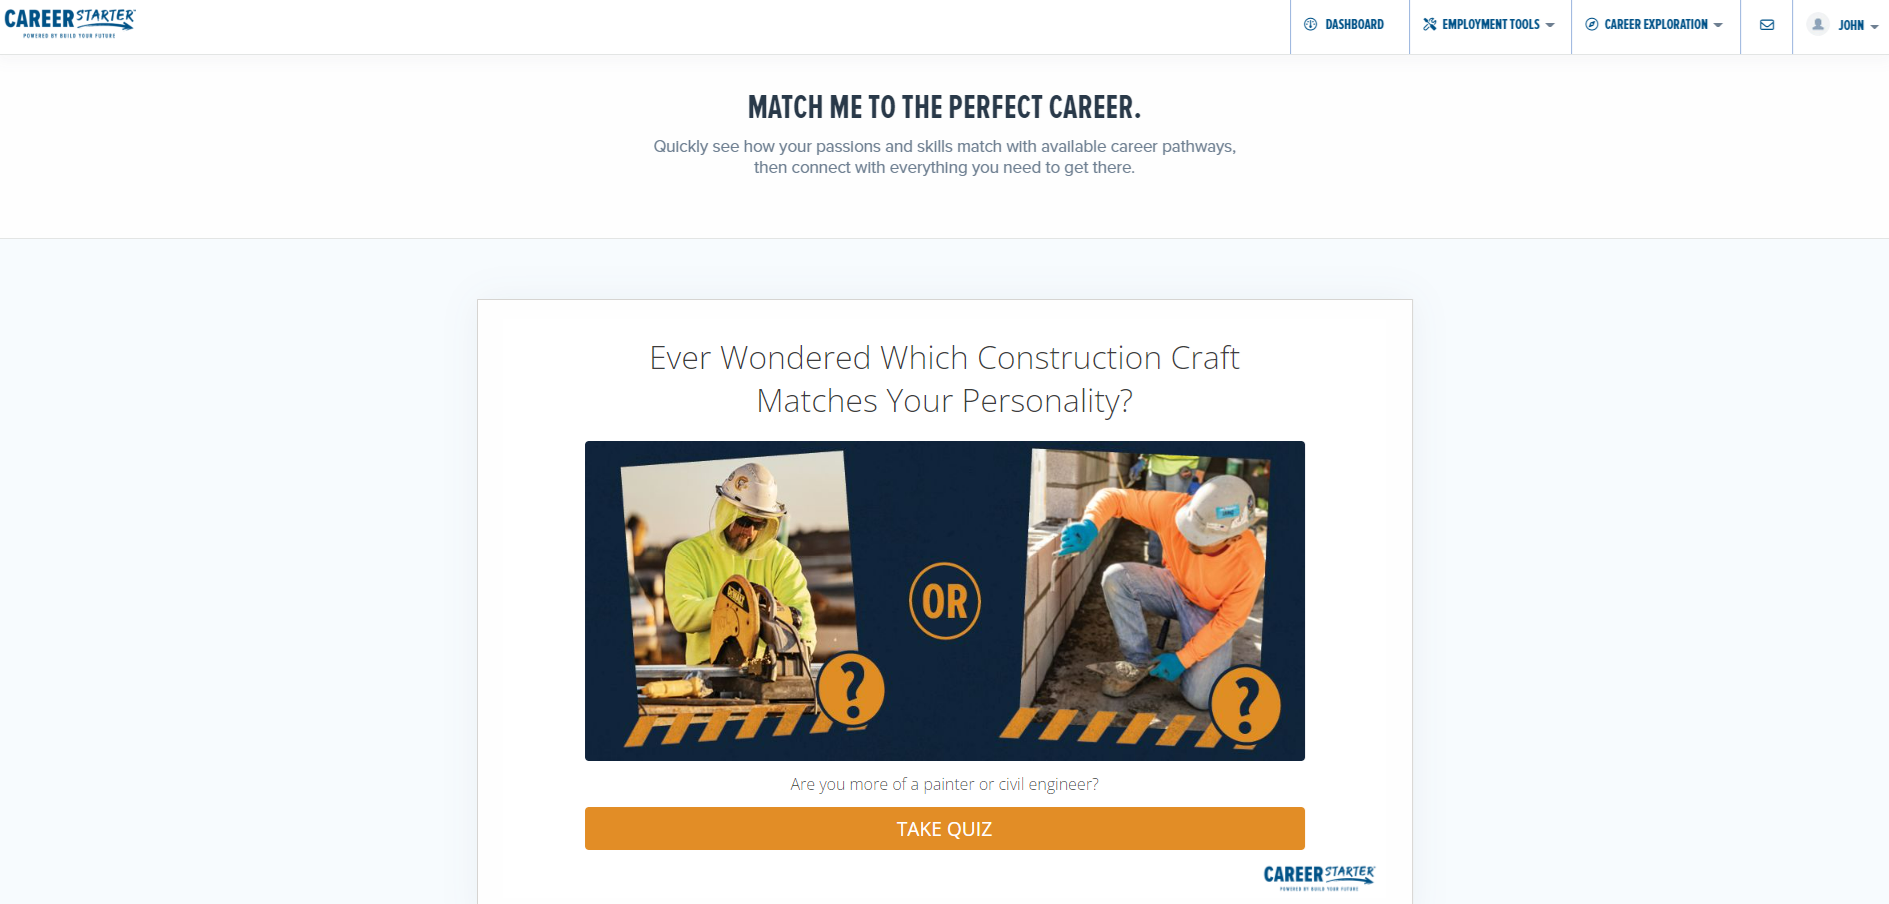 CareerStarter's career quiz for construction workers